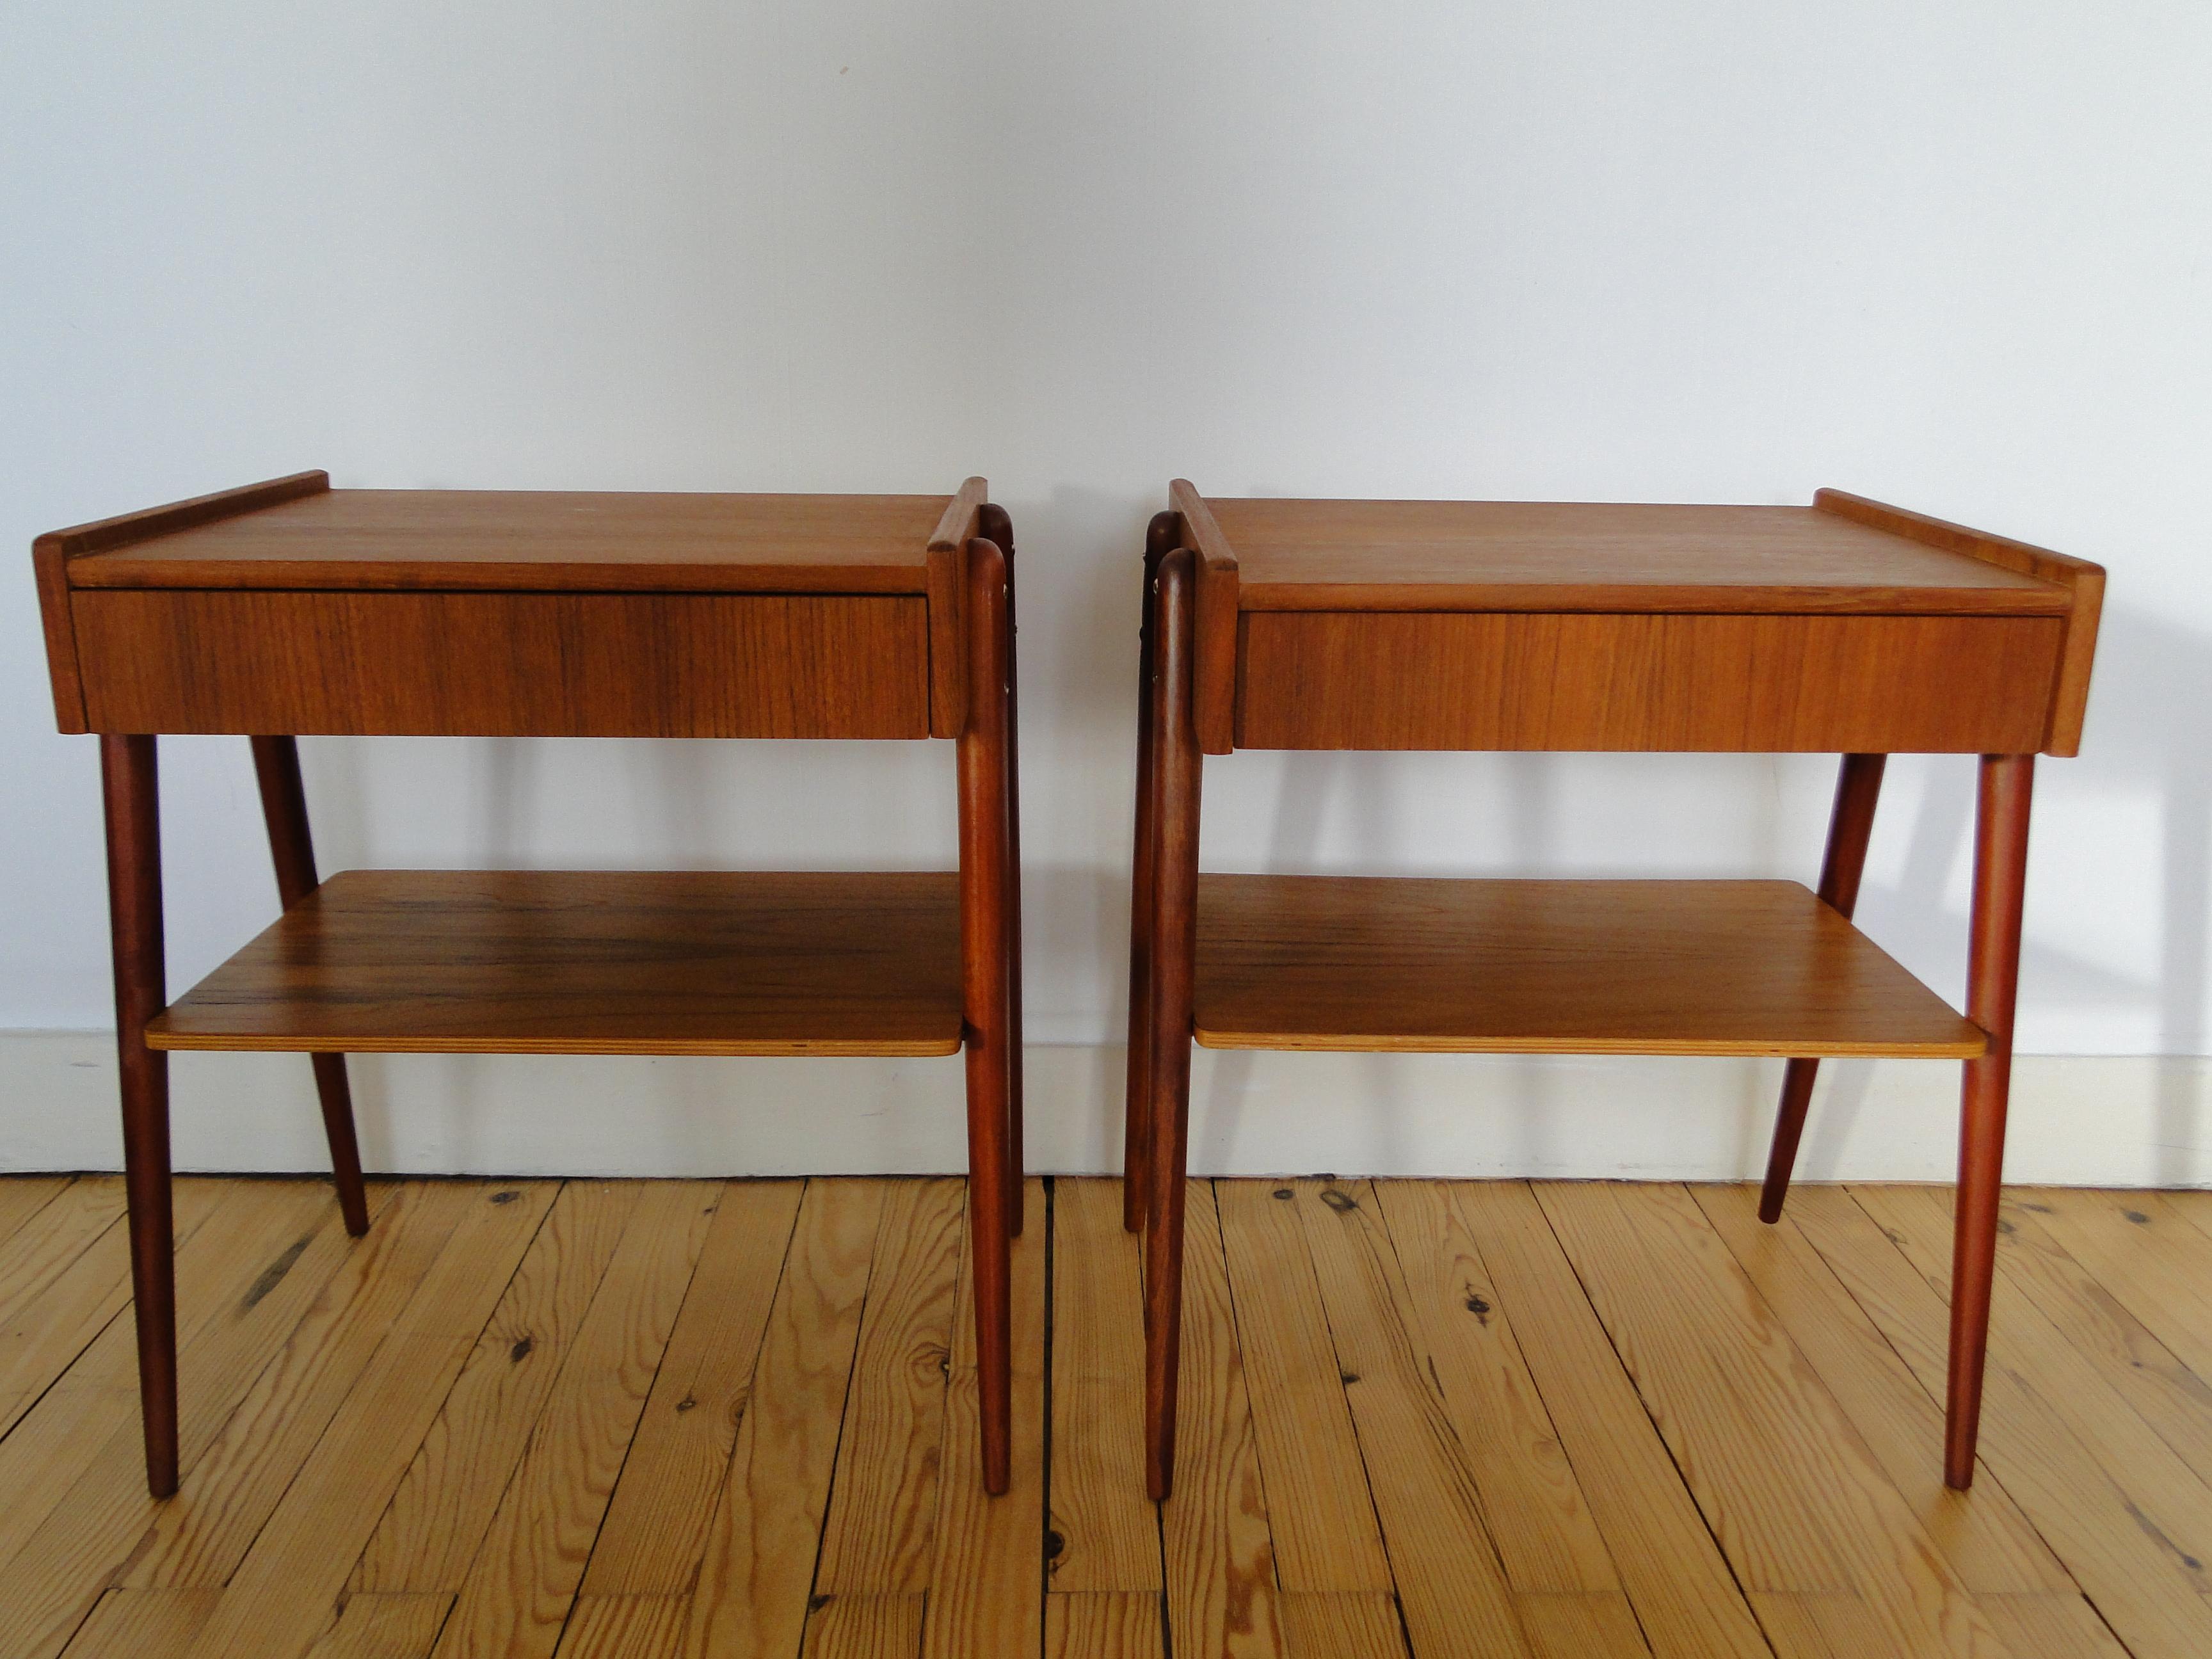 Cet ensemble de deux tables de chevet a été produit par AB Carlström & Co Möbelfabrik en Suède au tournant des années 1950 et 1960.

Cet ensemble de deux tables de chevet a été produit par AB Carlström & Co Möbelfabrik en Suède au tournant des